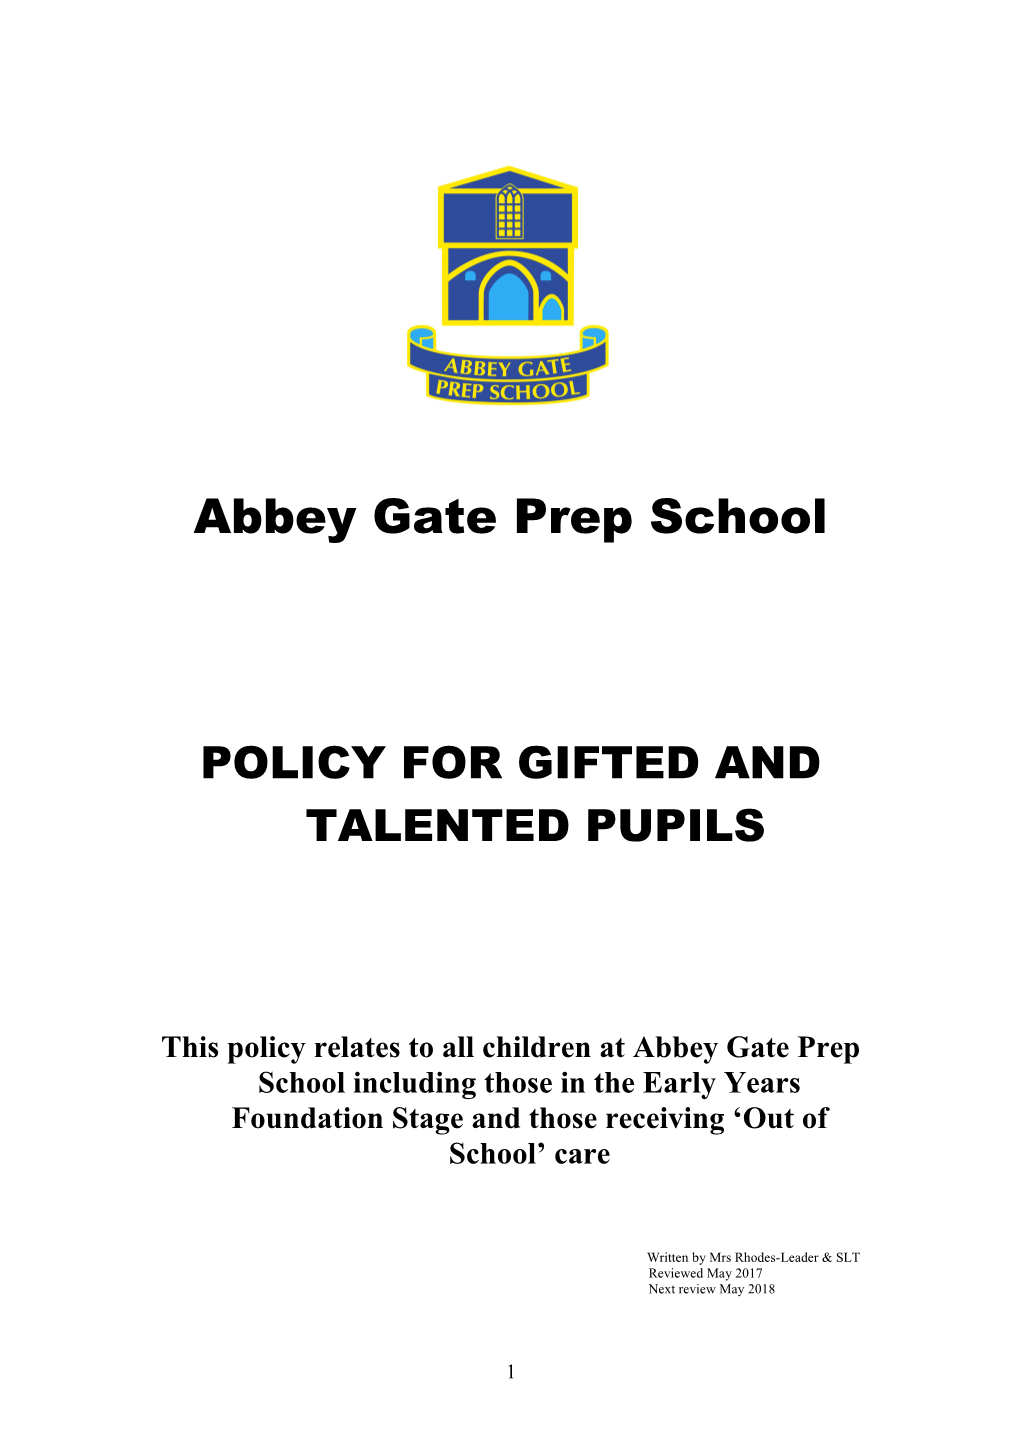 Abbey Gate School